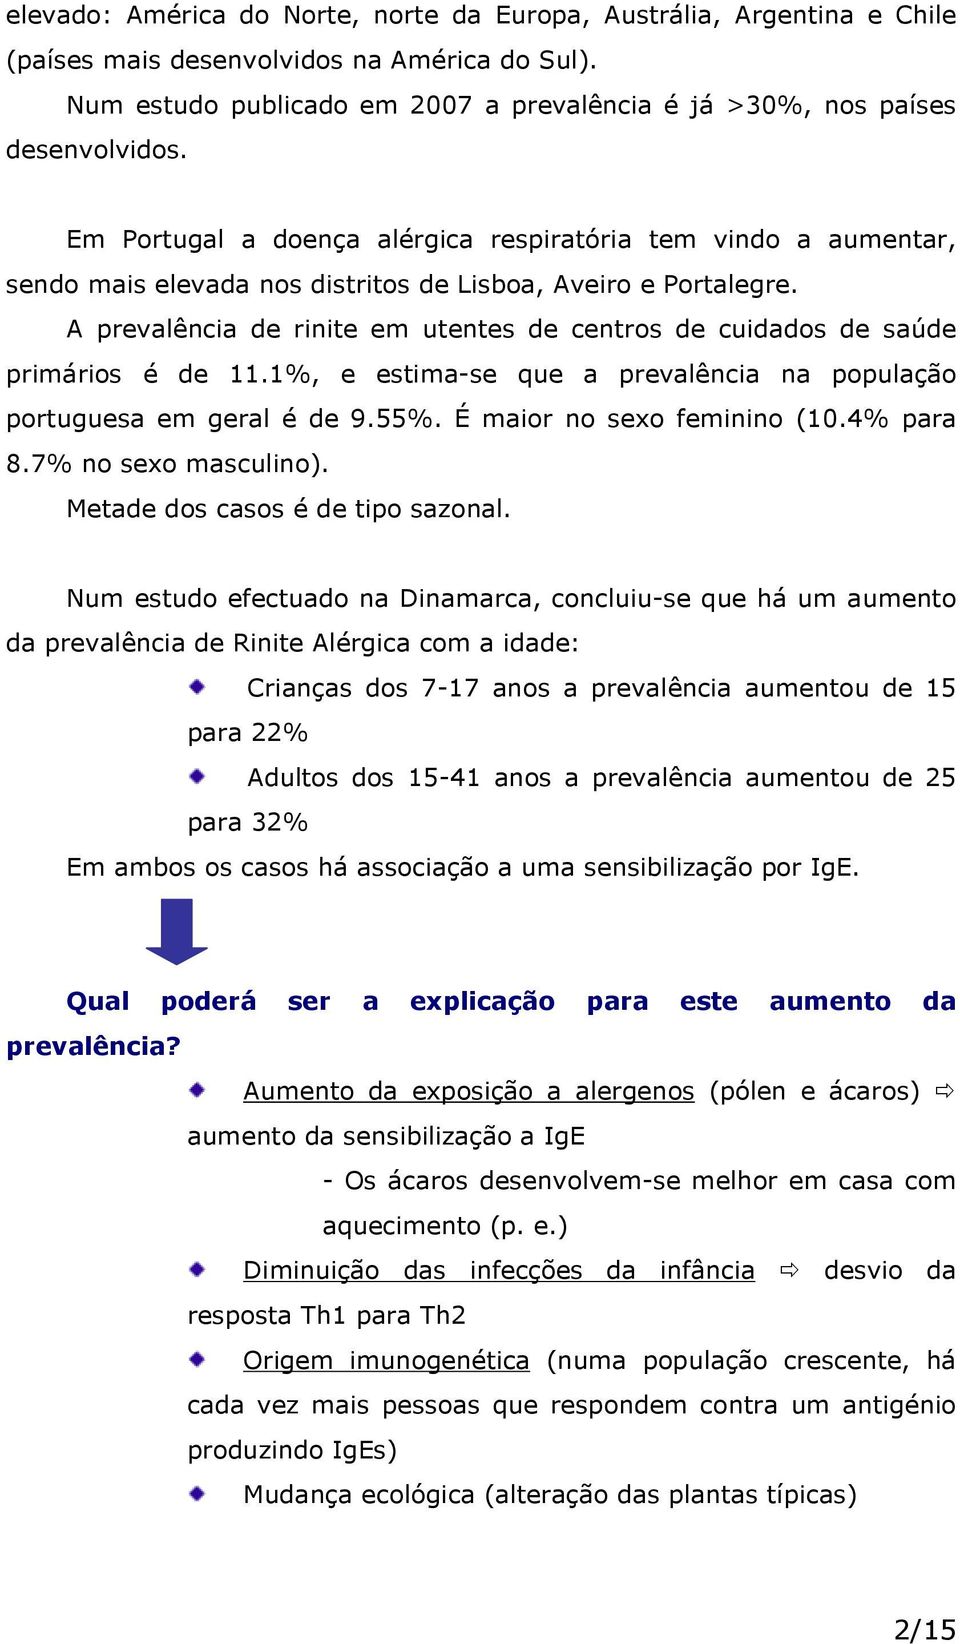 A prevalência de rinite em utentes de centros de cuidados de saúde primários é de 11.1%, e estima-se que a prevalência na população portuguesa em geral é de 9.55%. É maior no sexo feminino (10.